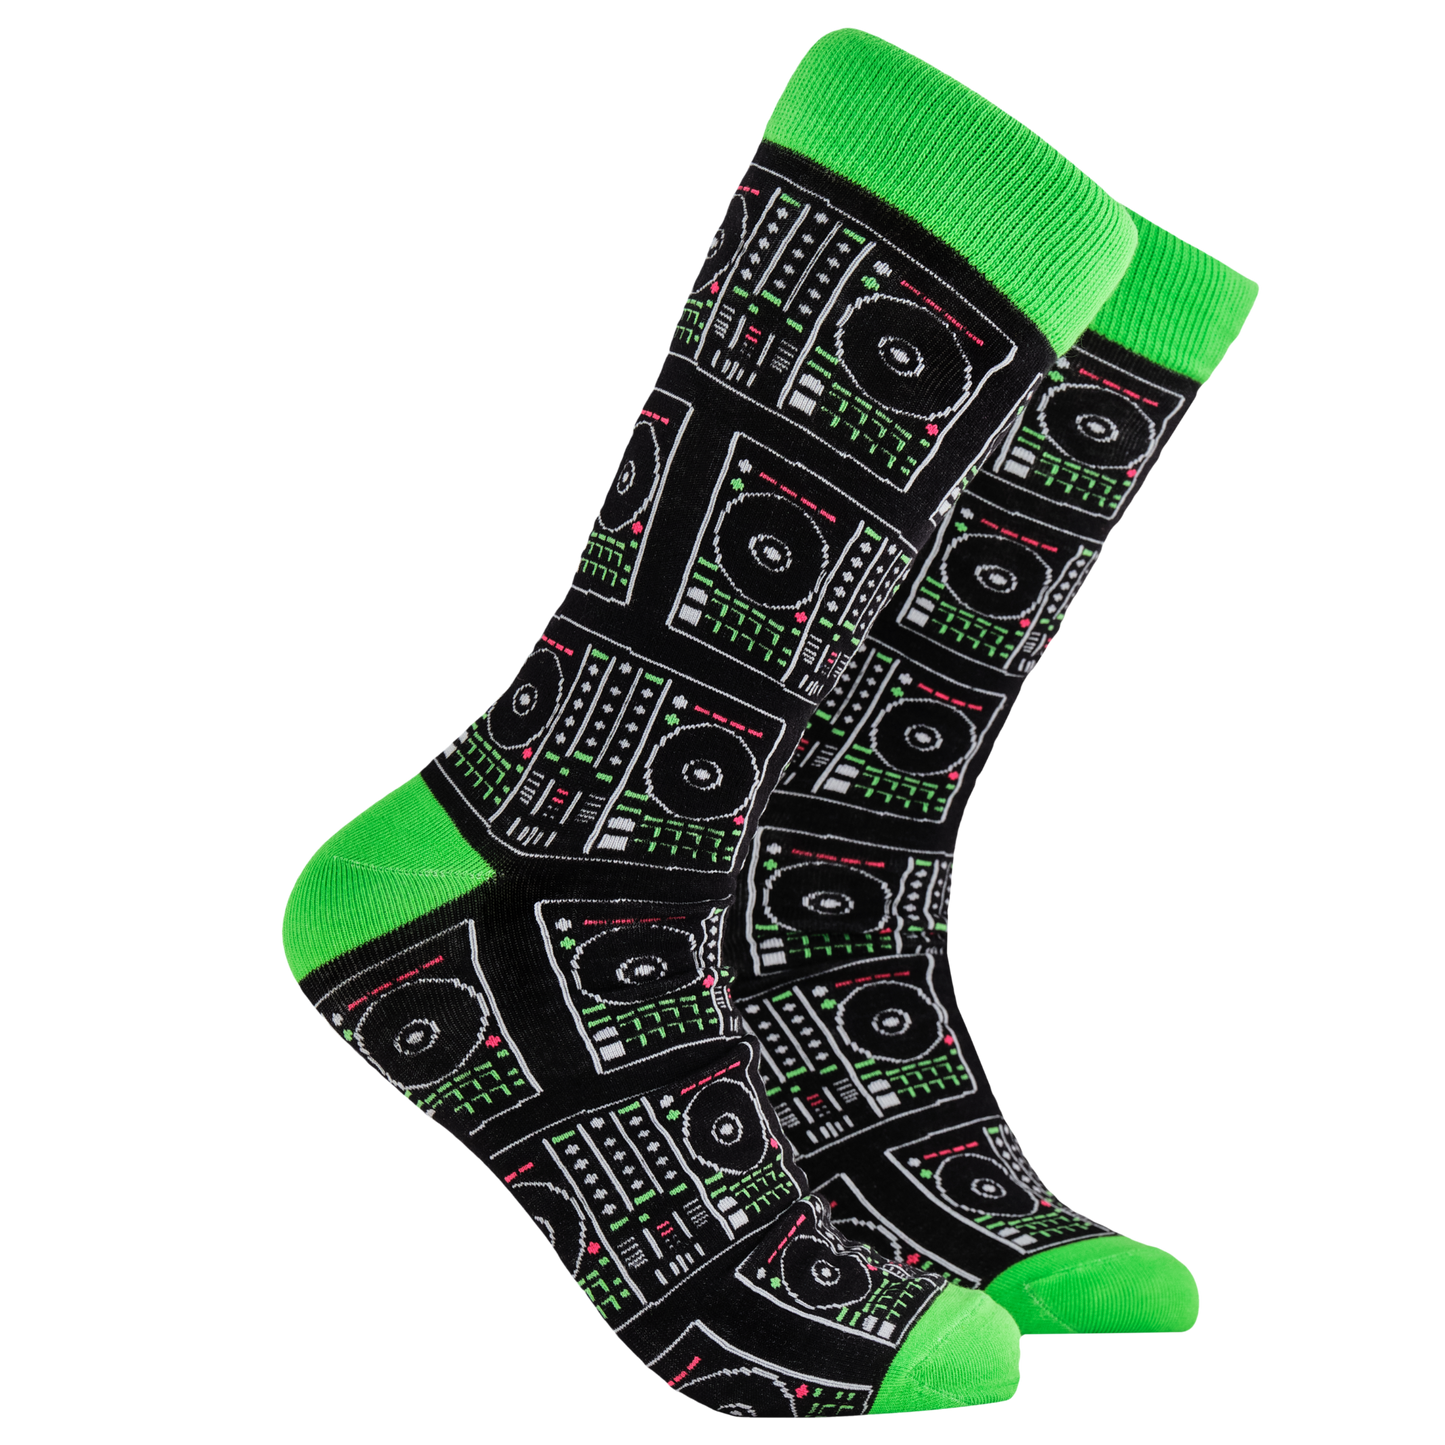 DJ Socks - A DJ Saved My Life. A pair of socks depicting digital DJ controllers. Black legs, green cuff, heel and toe.